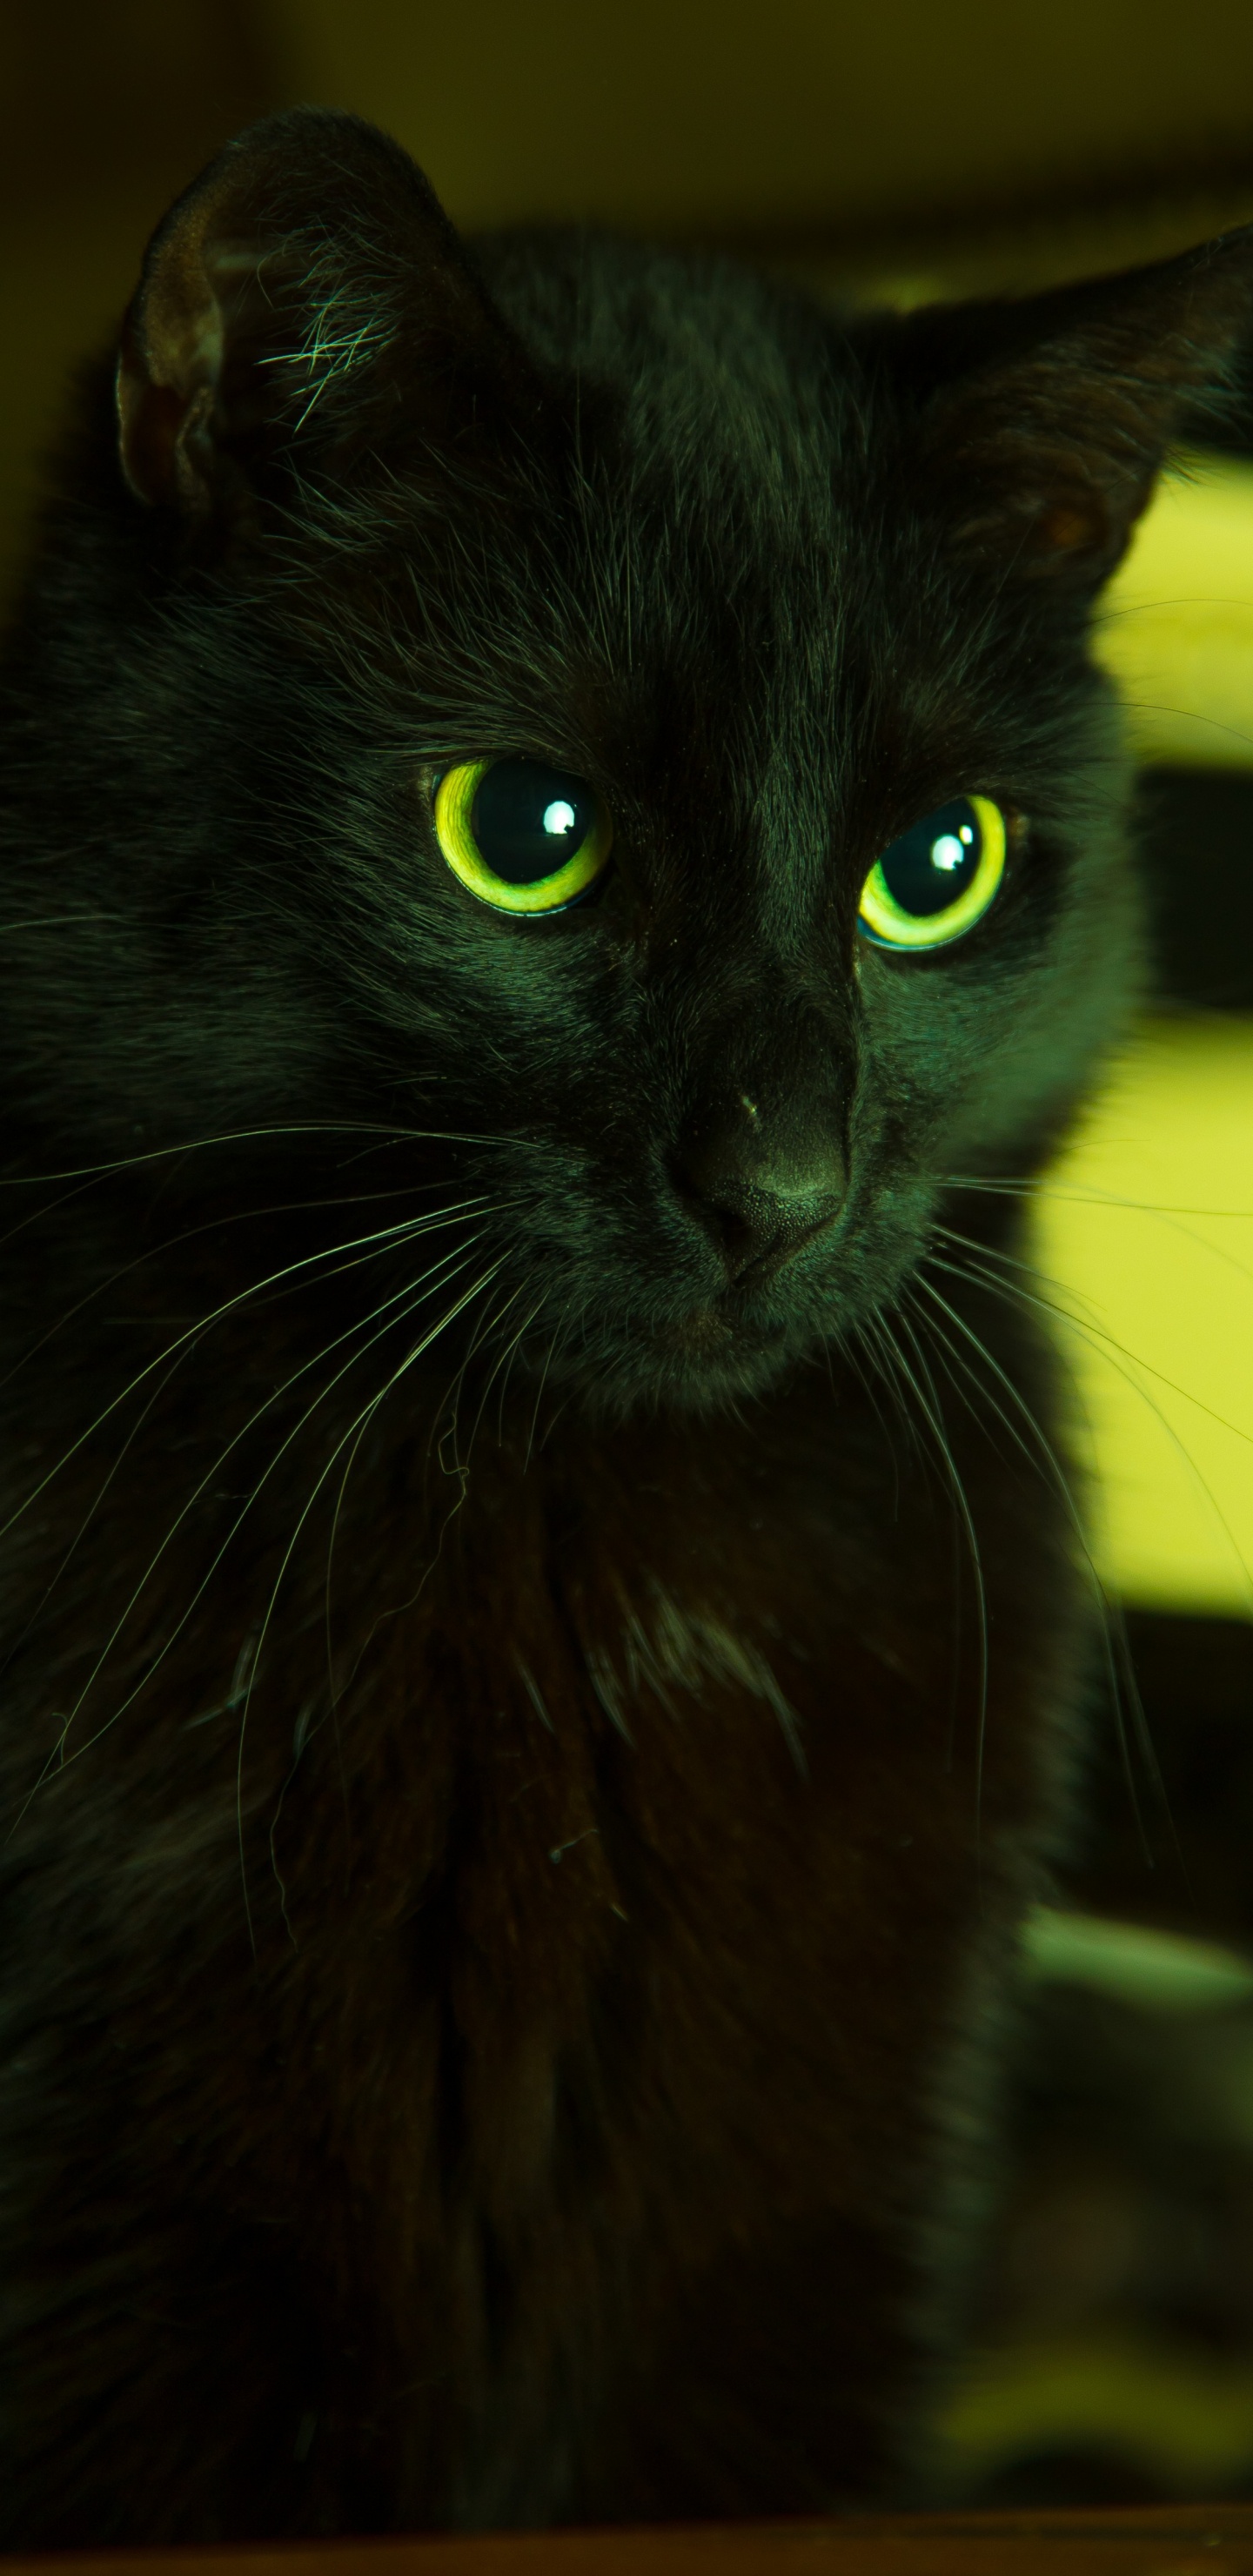 Gato Negro en Lente de Cambio de Inclinación. Wallpaper in 1440x2960 Resolution